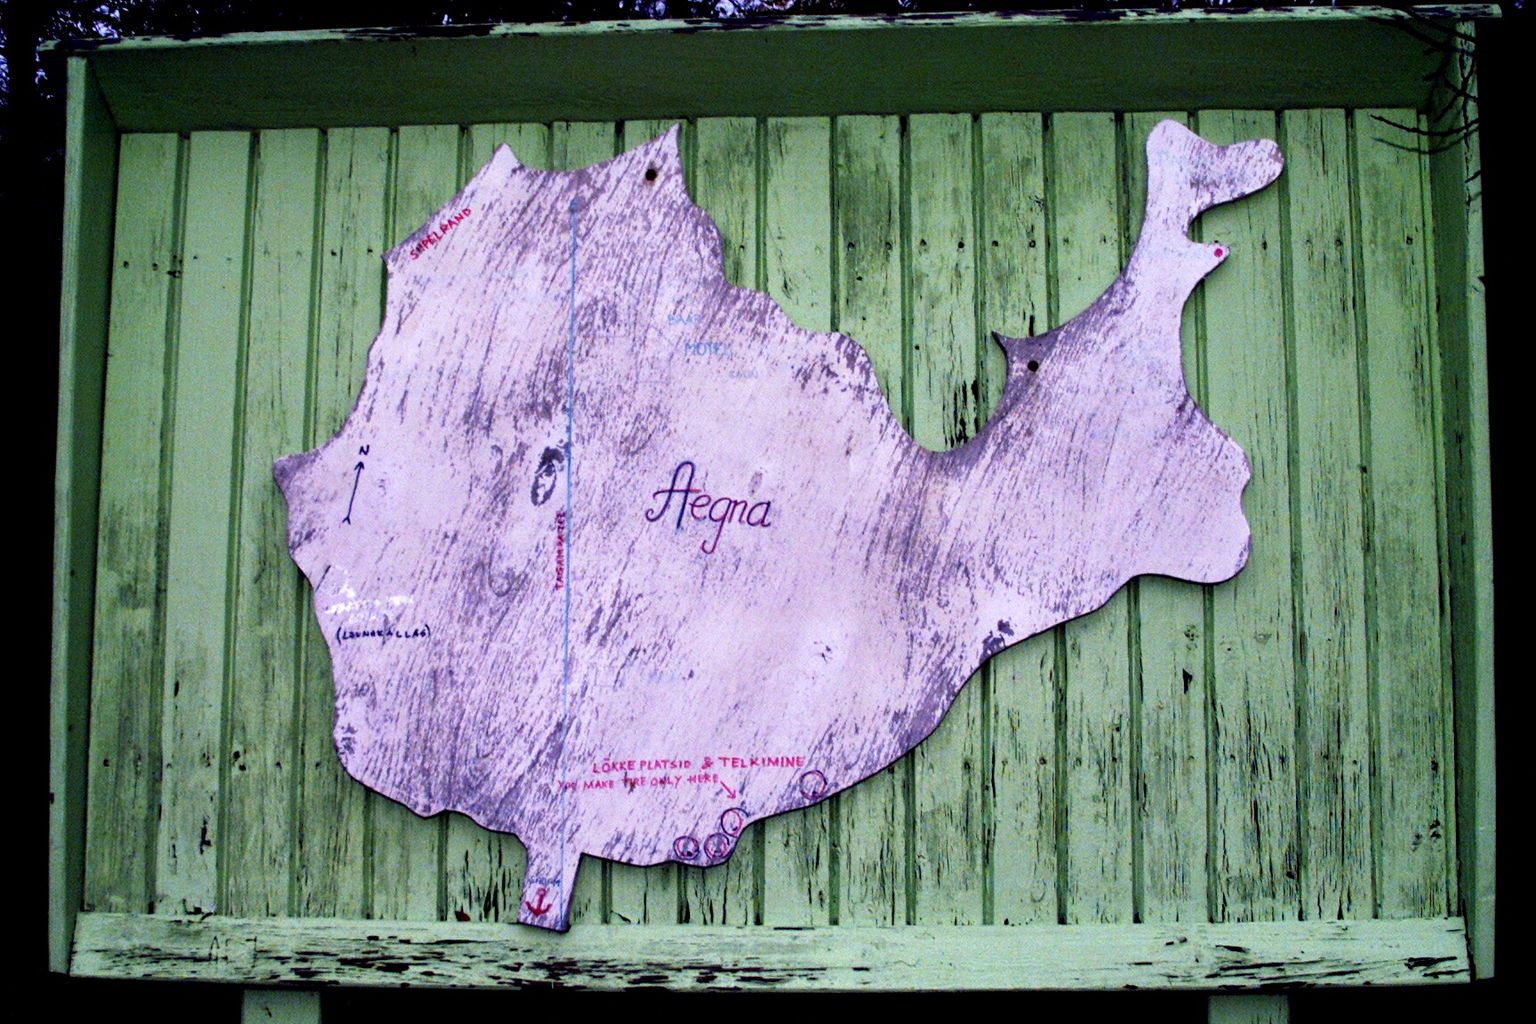 Деревянная карта в порту острова Аэгна